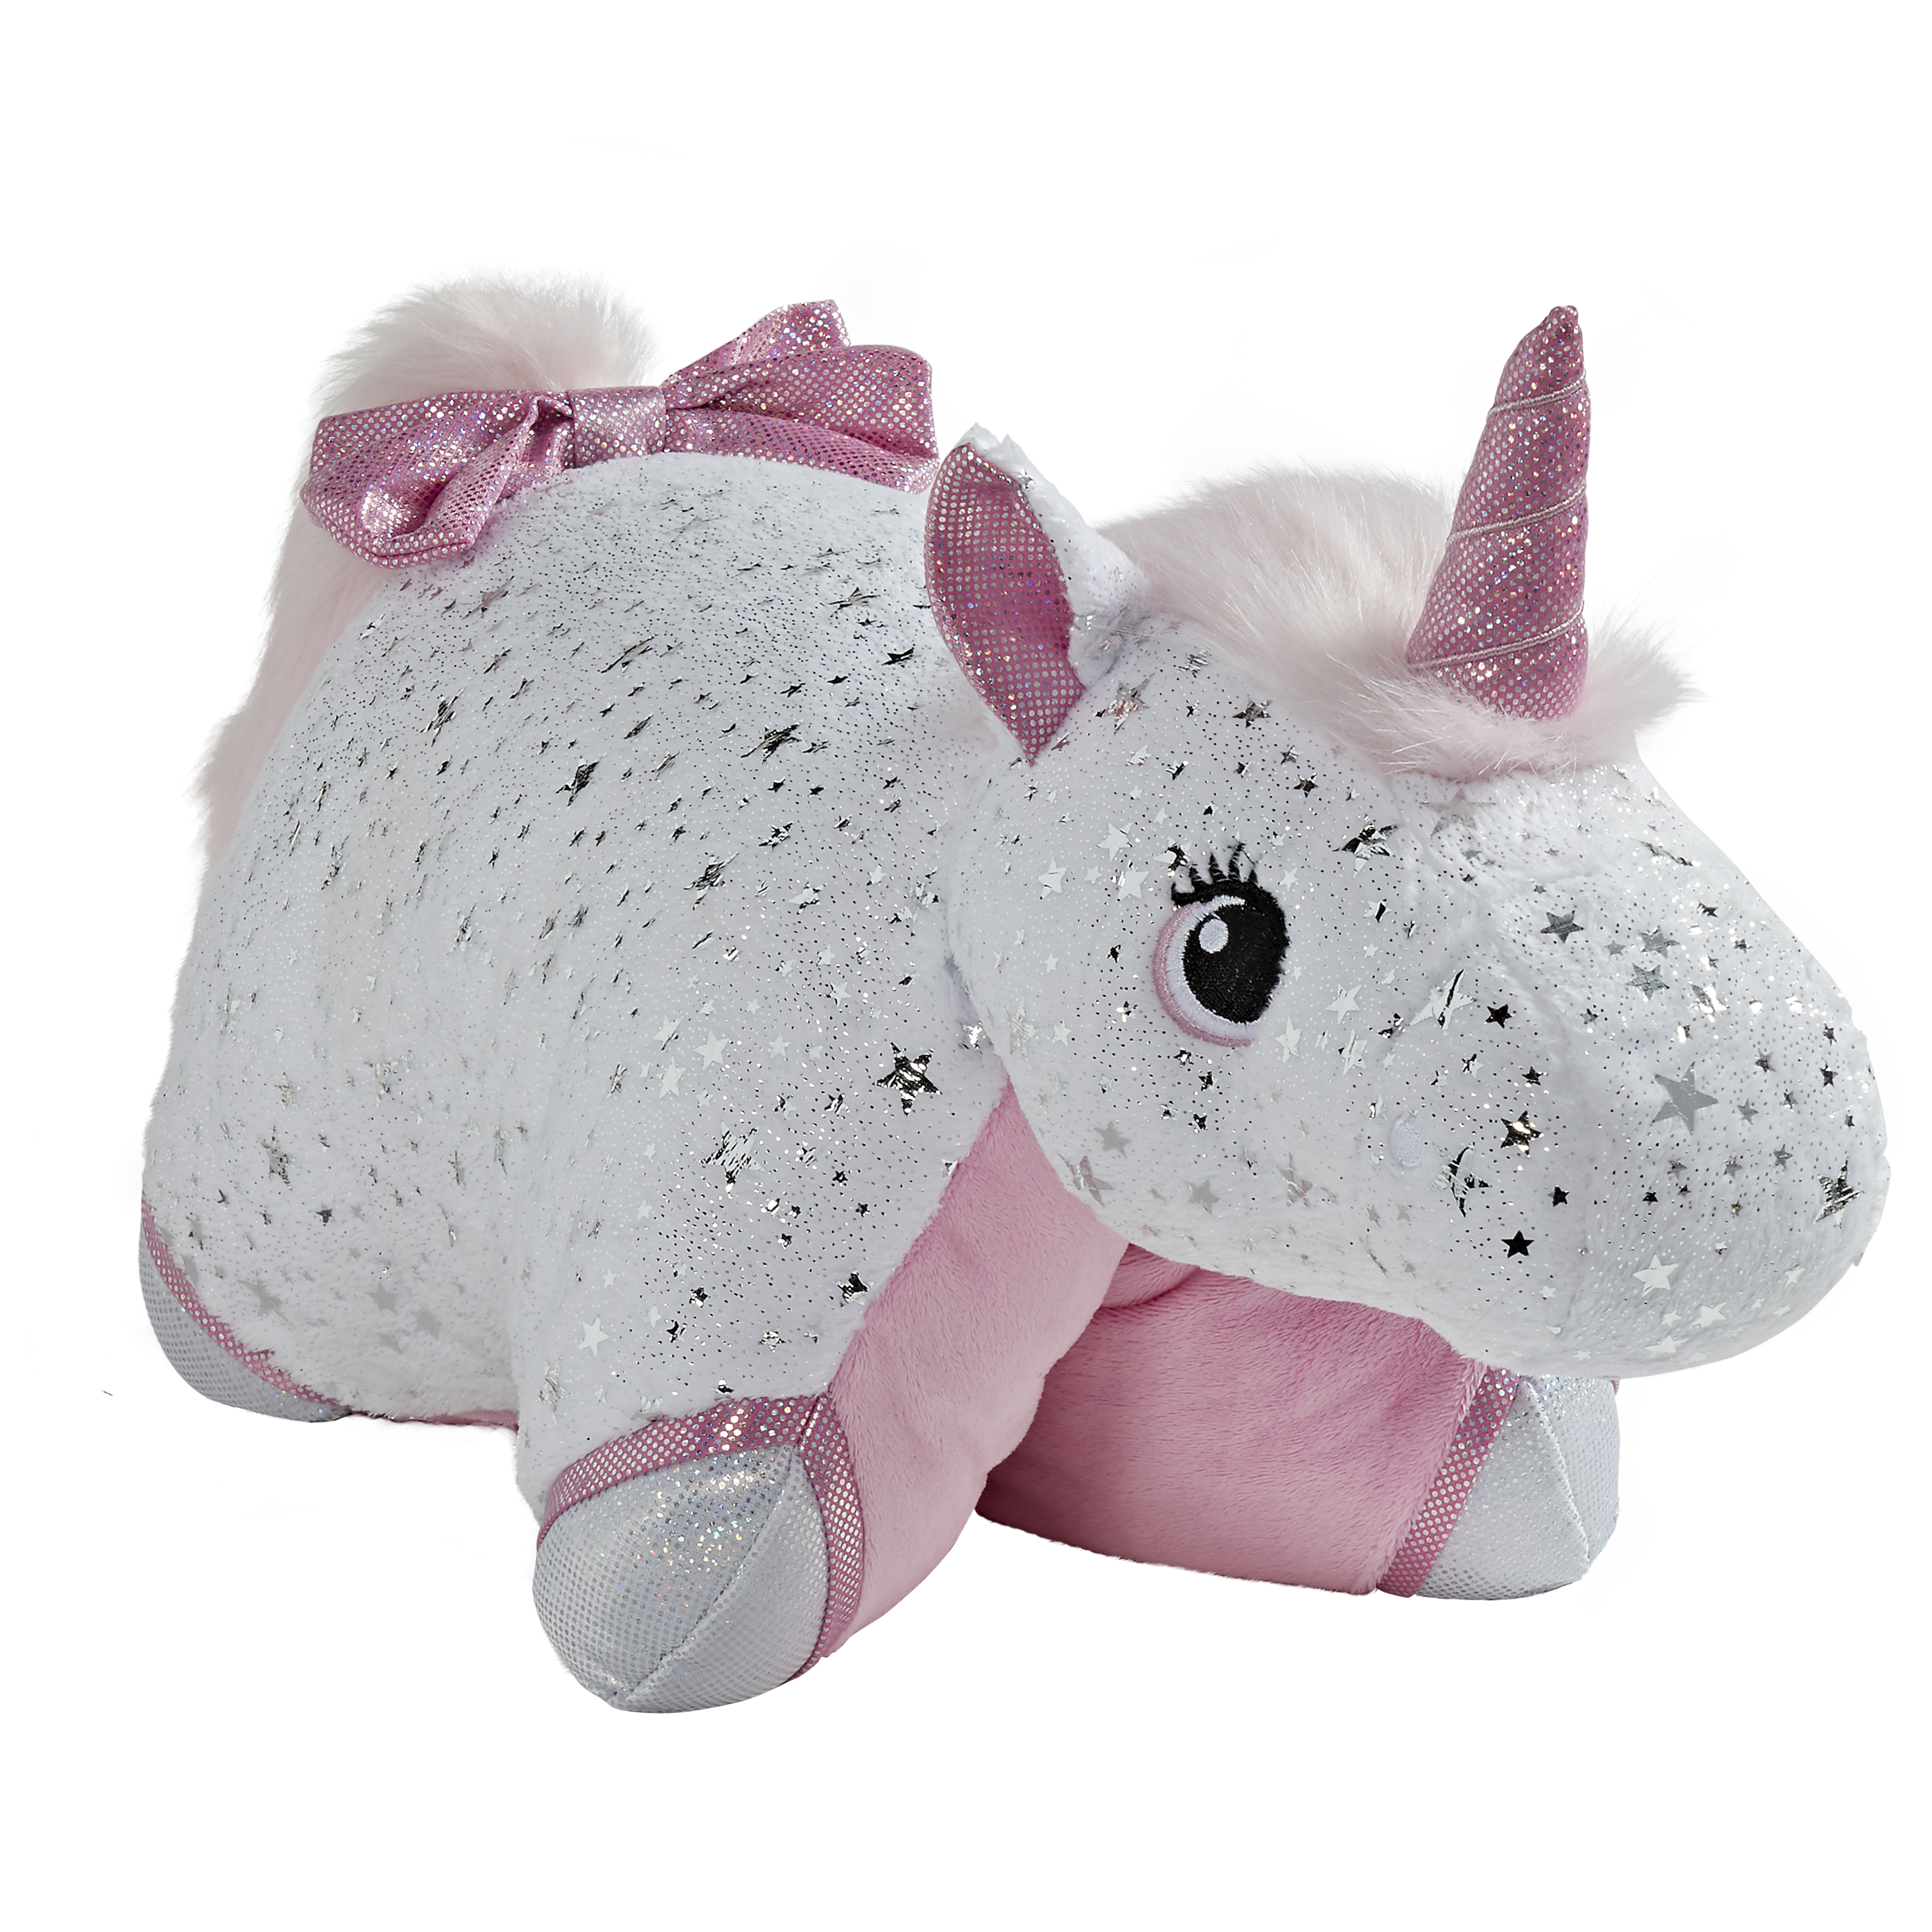 Pillow Pets Signature Glittery White Unicorn Stuffed Animal Plush Toy - image 1 of 5